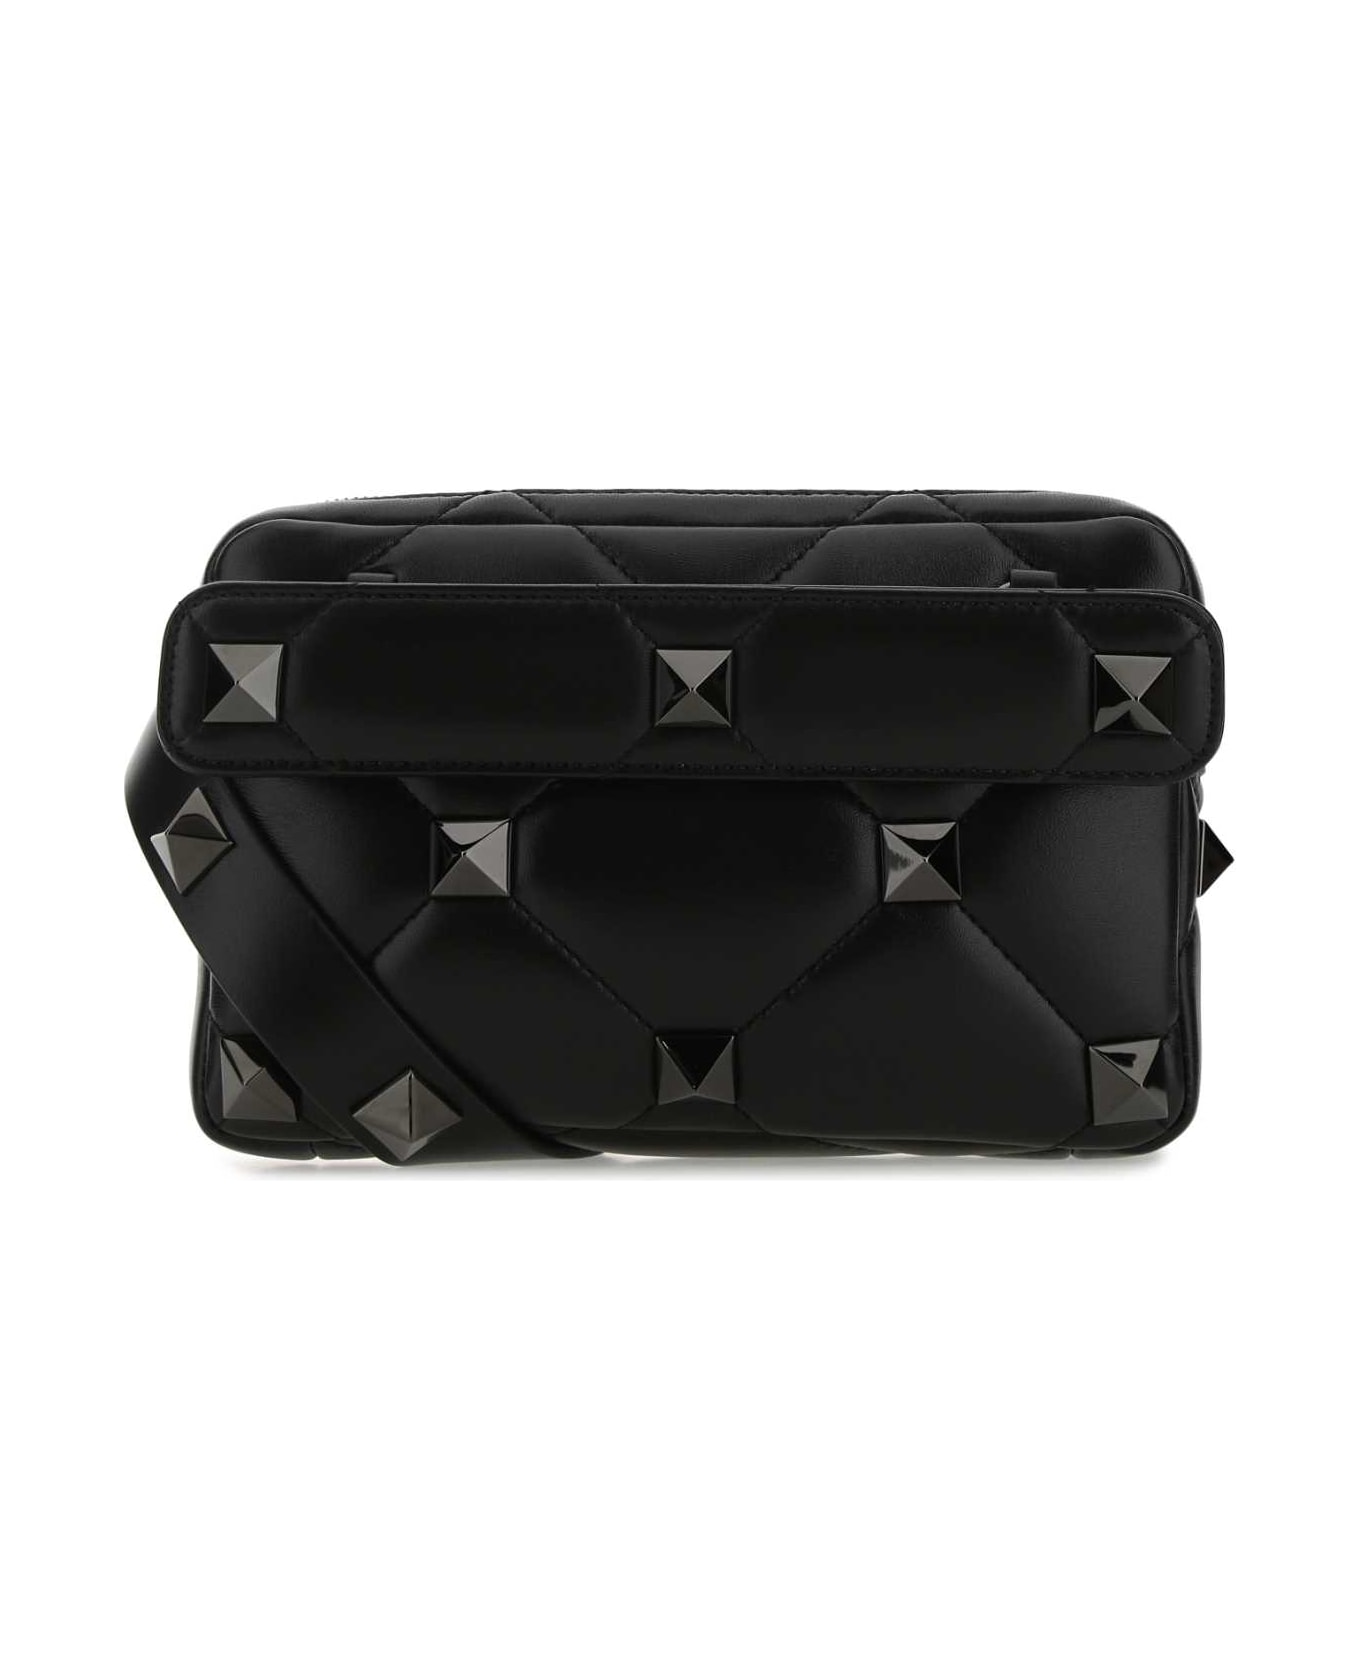 Valentino Garavani Black Nappa Leather Roman Stud Handbag - 0NO